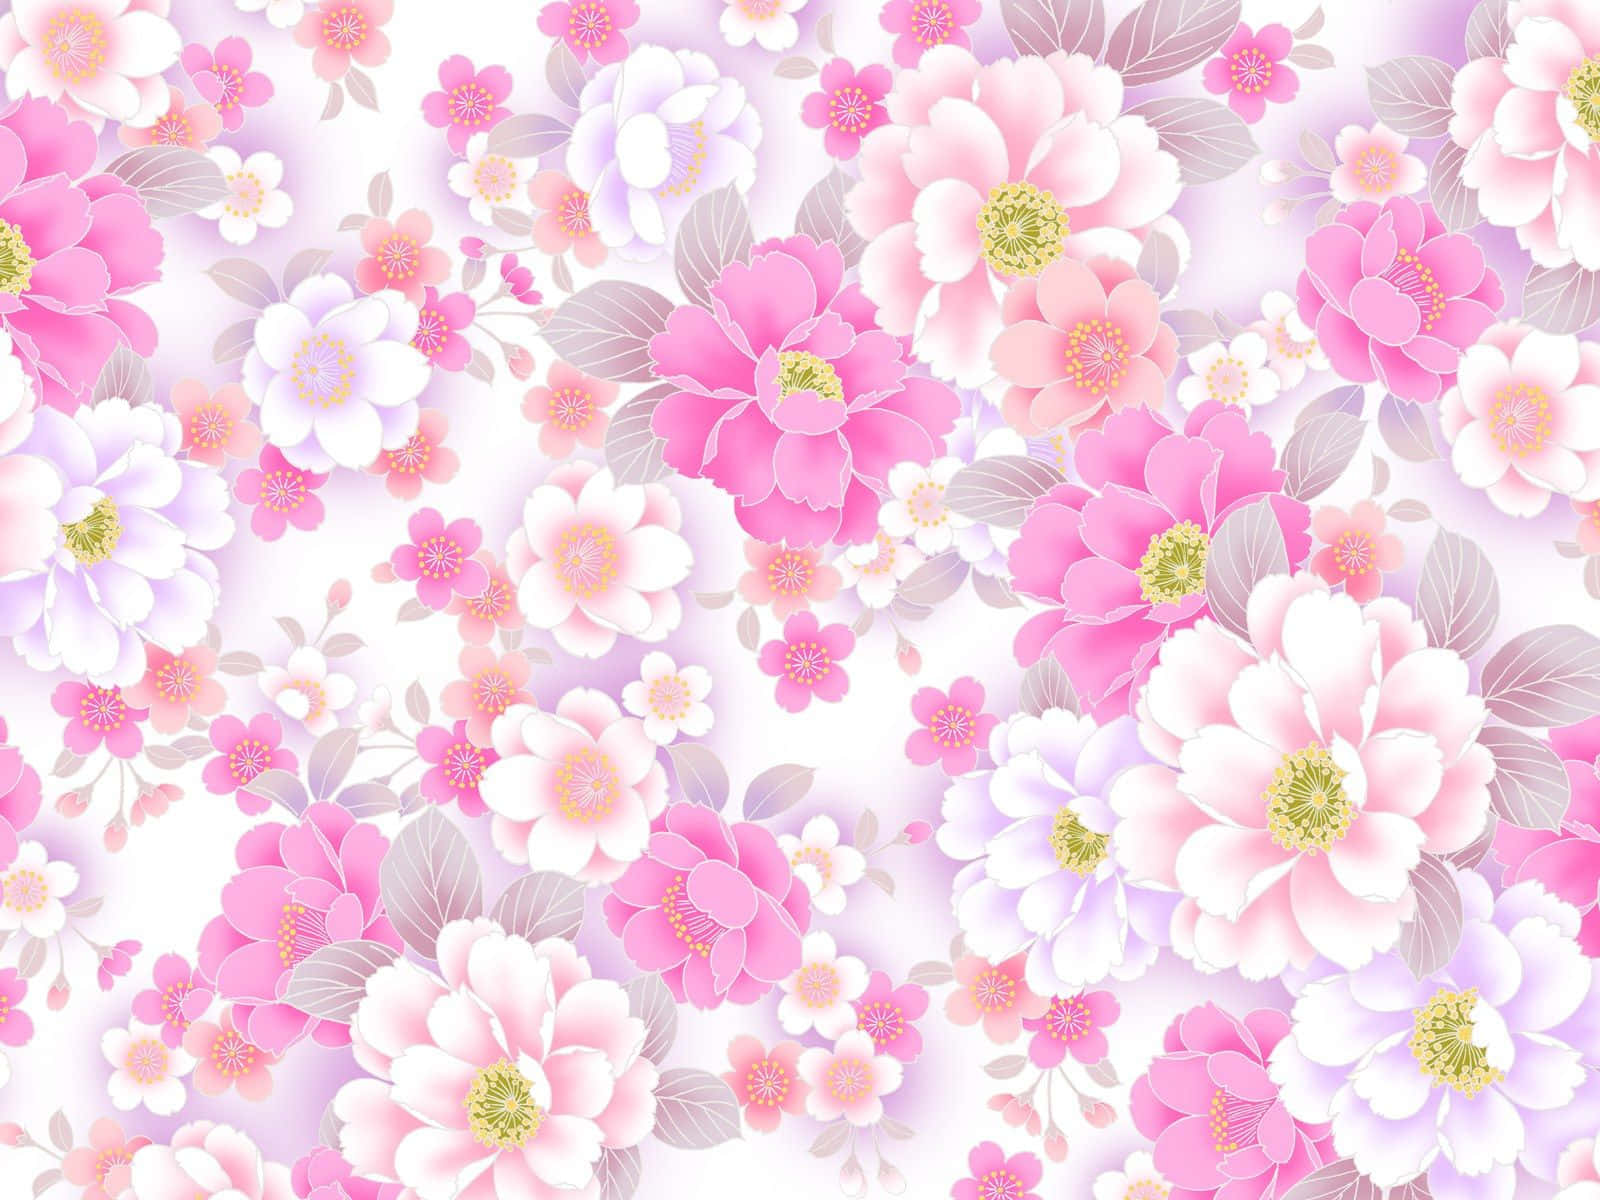 Einatemberaubendes Muster Aus Lebendigen Blumen, Arrangiert In Einem Klassischen Floralen Design.